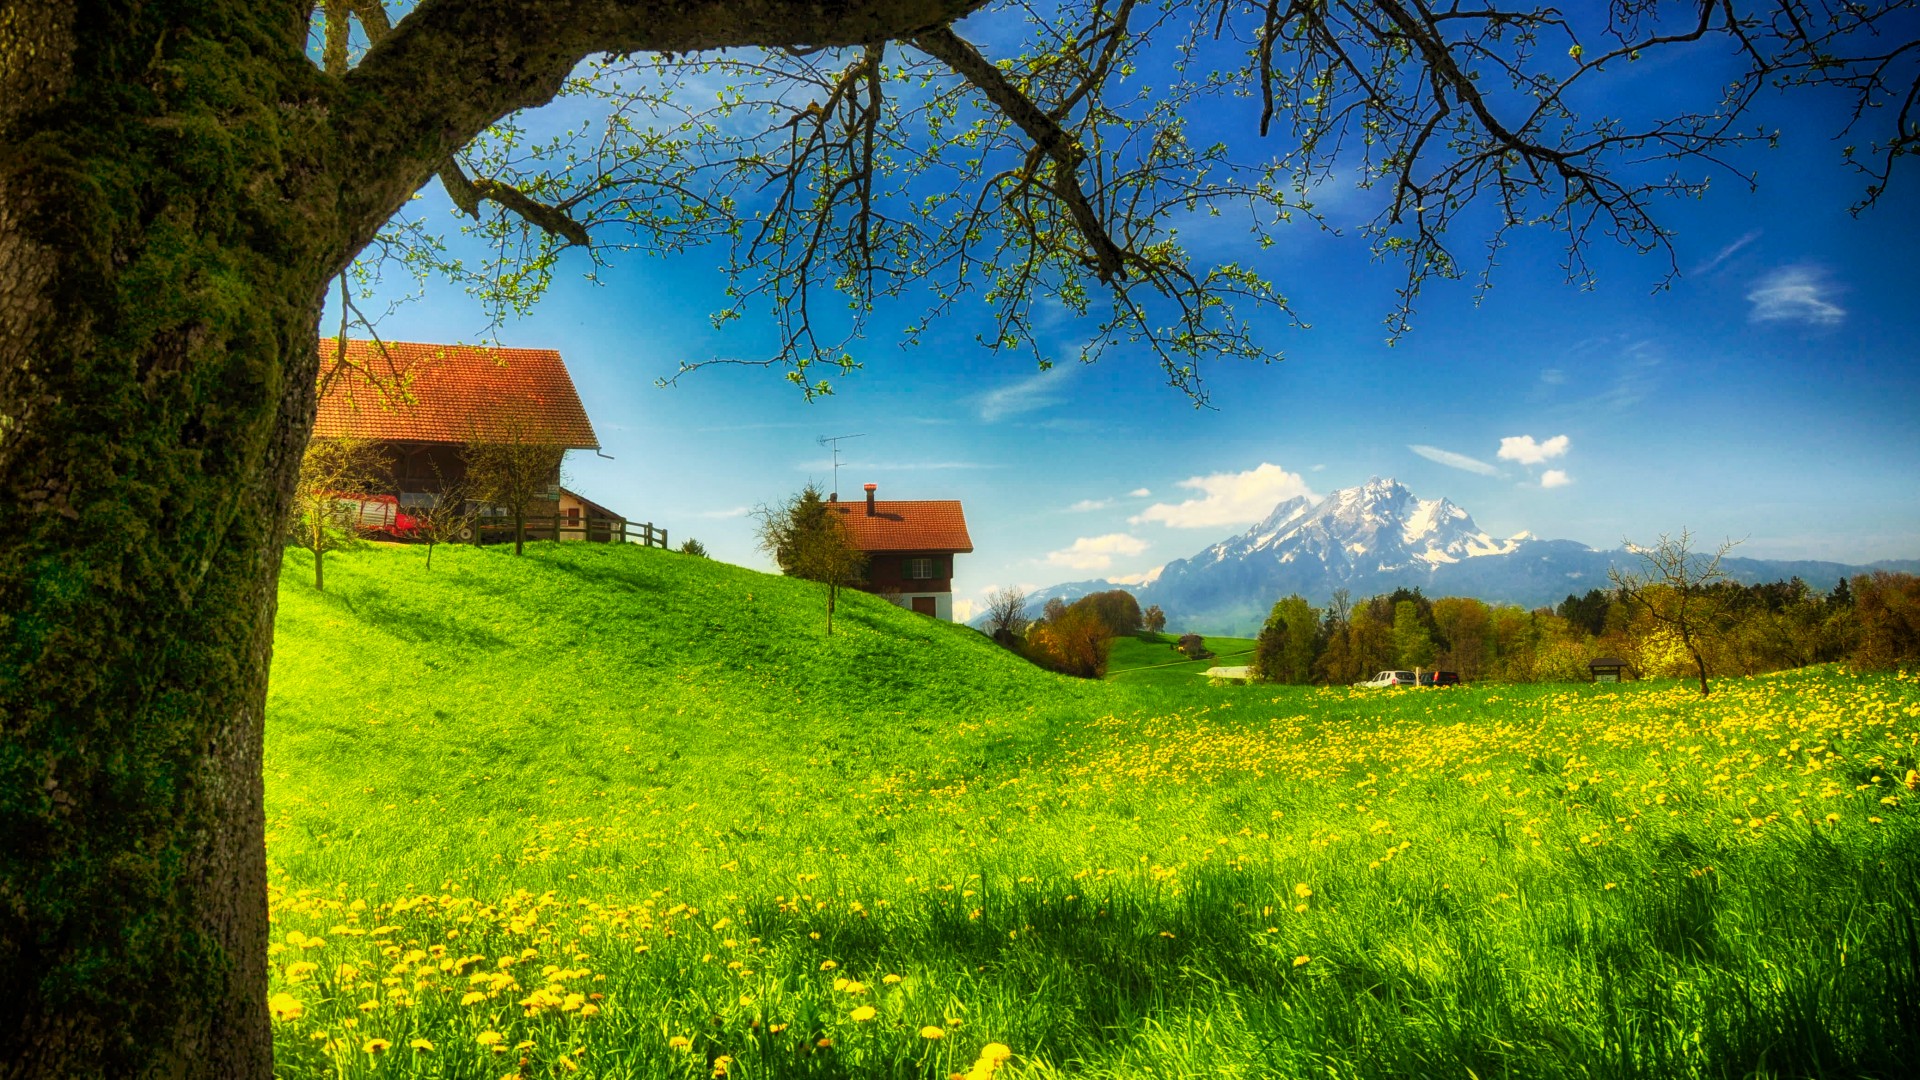 春天,绿色小草,鲜花,树,家小屋,风景桌面壁纸